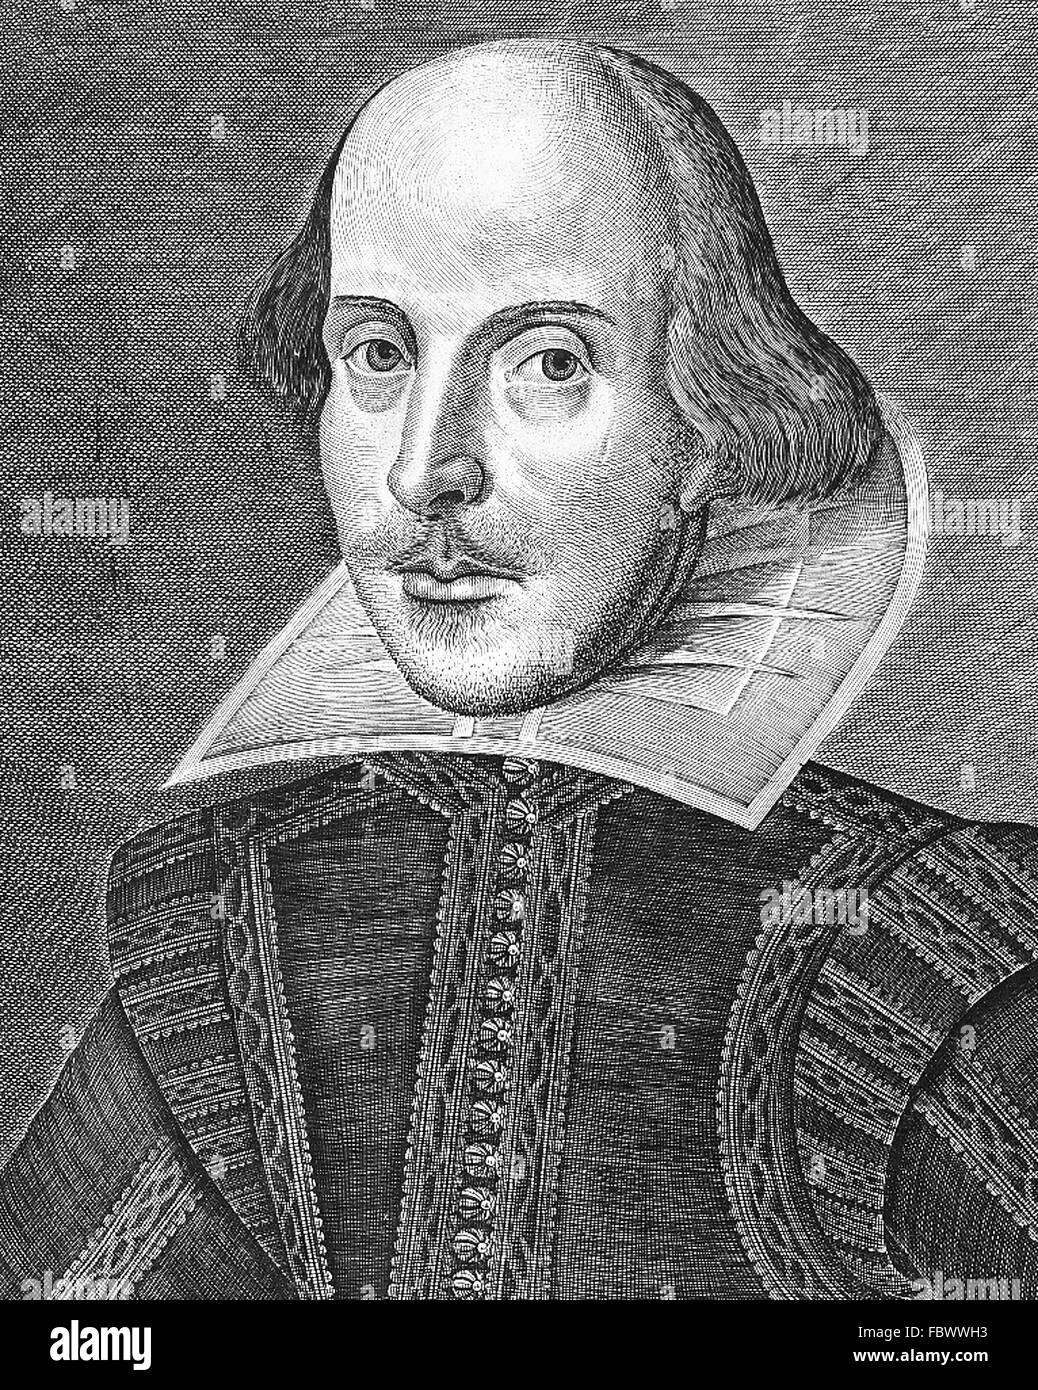 Shakespeare, ritratto. Incisione su rame di William Shakespeare da Martin Droeshout dalla pagina del titolo del primo Folio, pubblicato nel 1623 Foto Stock